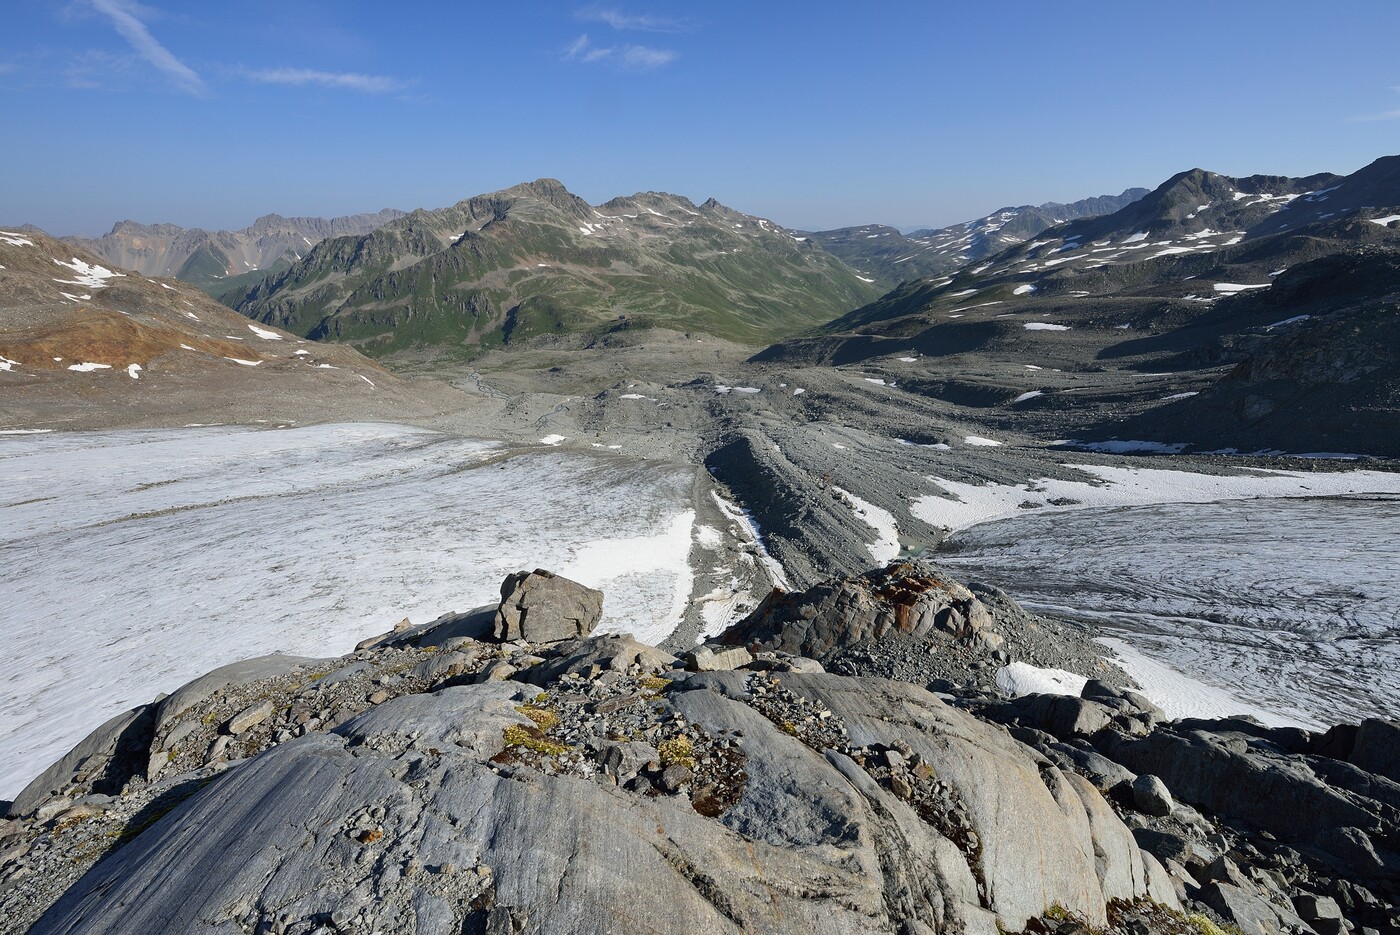 Landschaften und Natur in der Umgebung der Keschhütte: Vom Gletscher geschliffene Platten auf dem Porchabella-Gletscher.